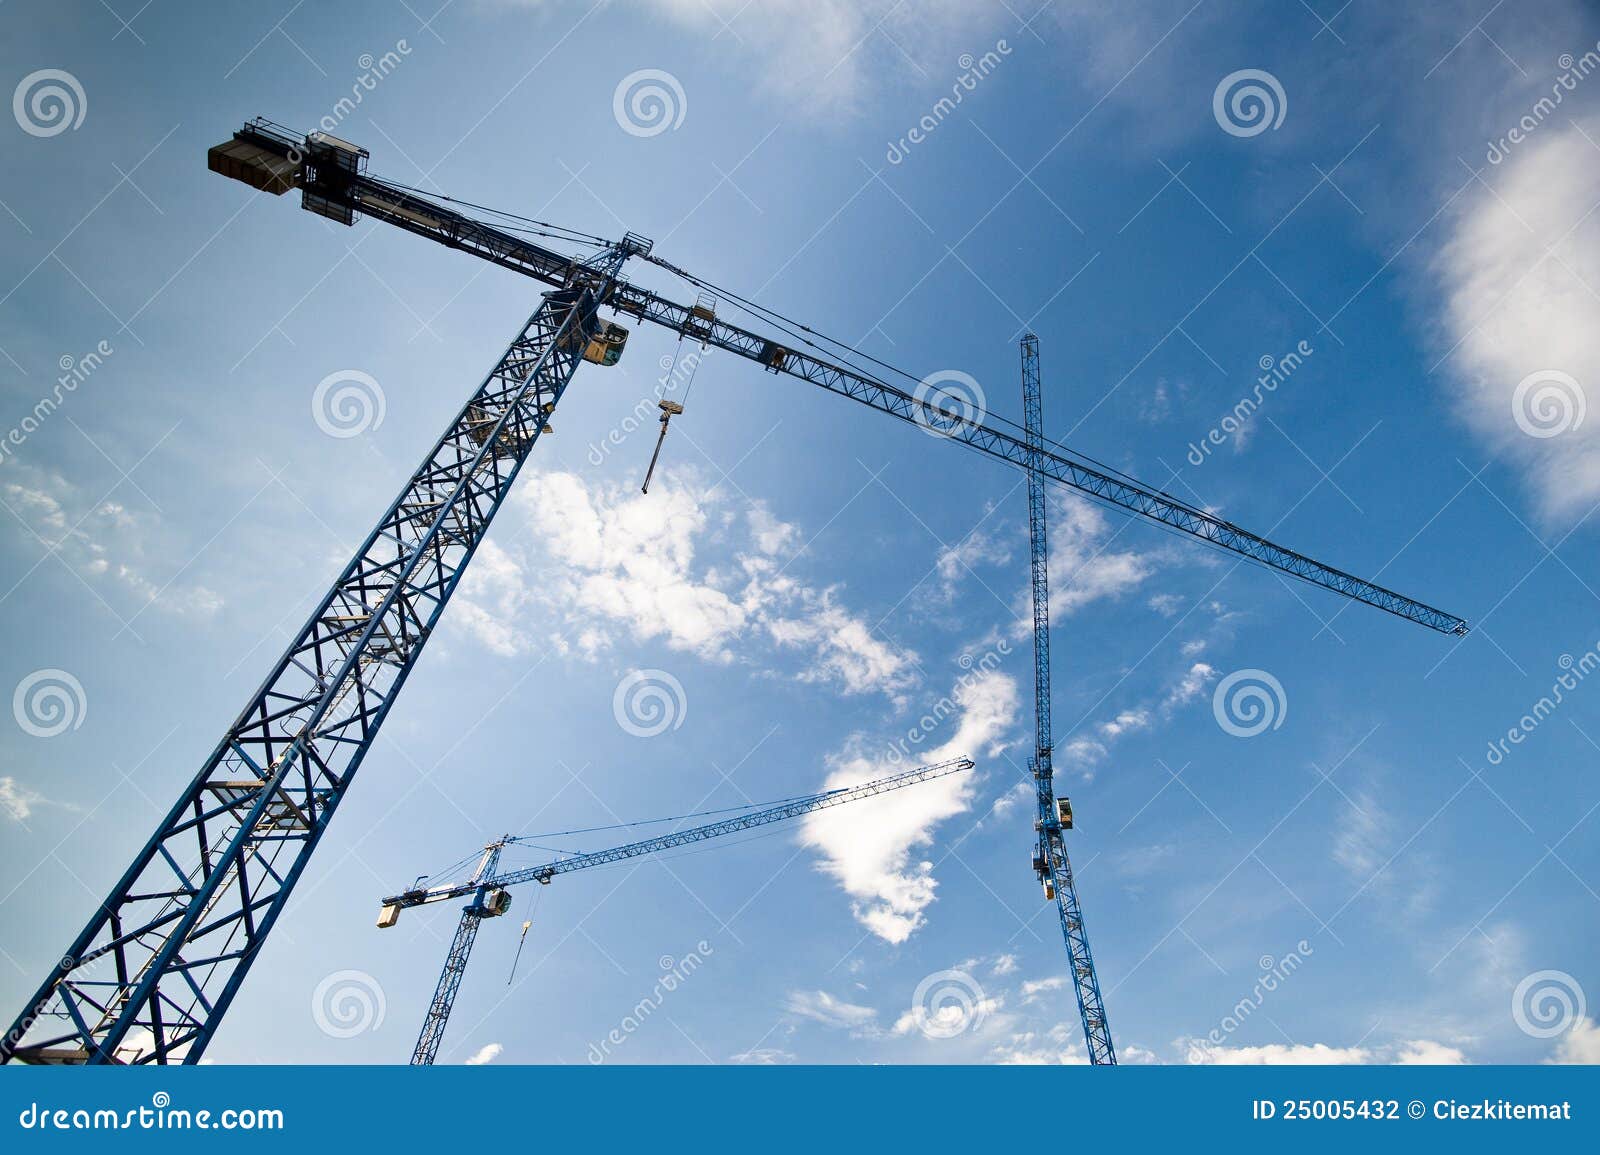 big construction cranes